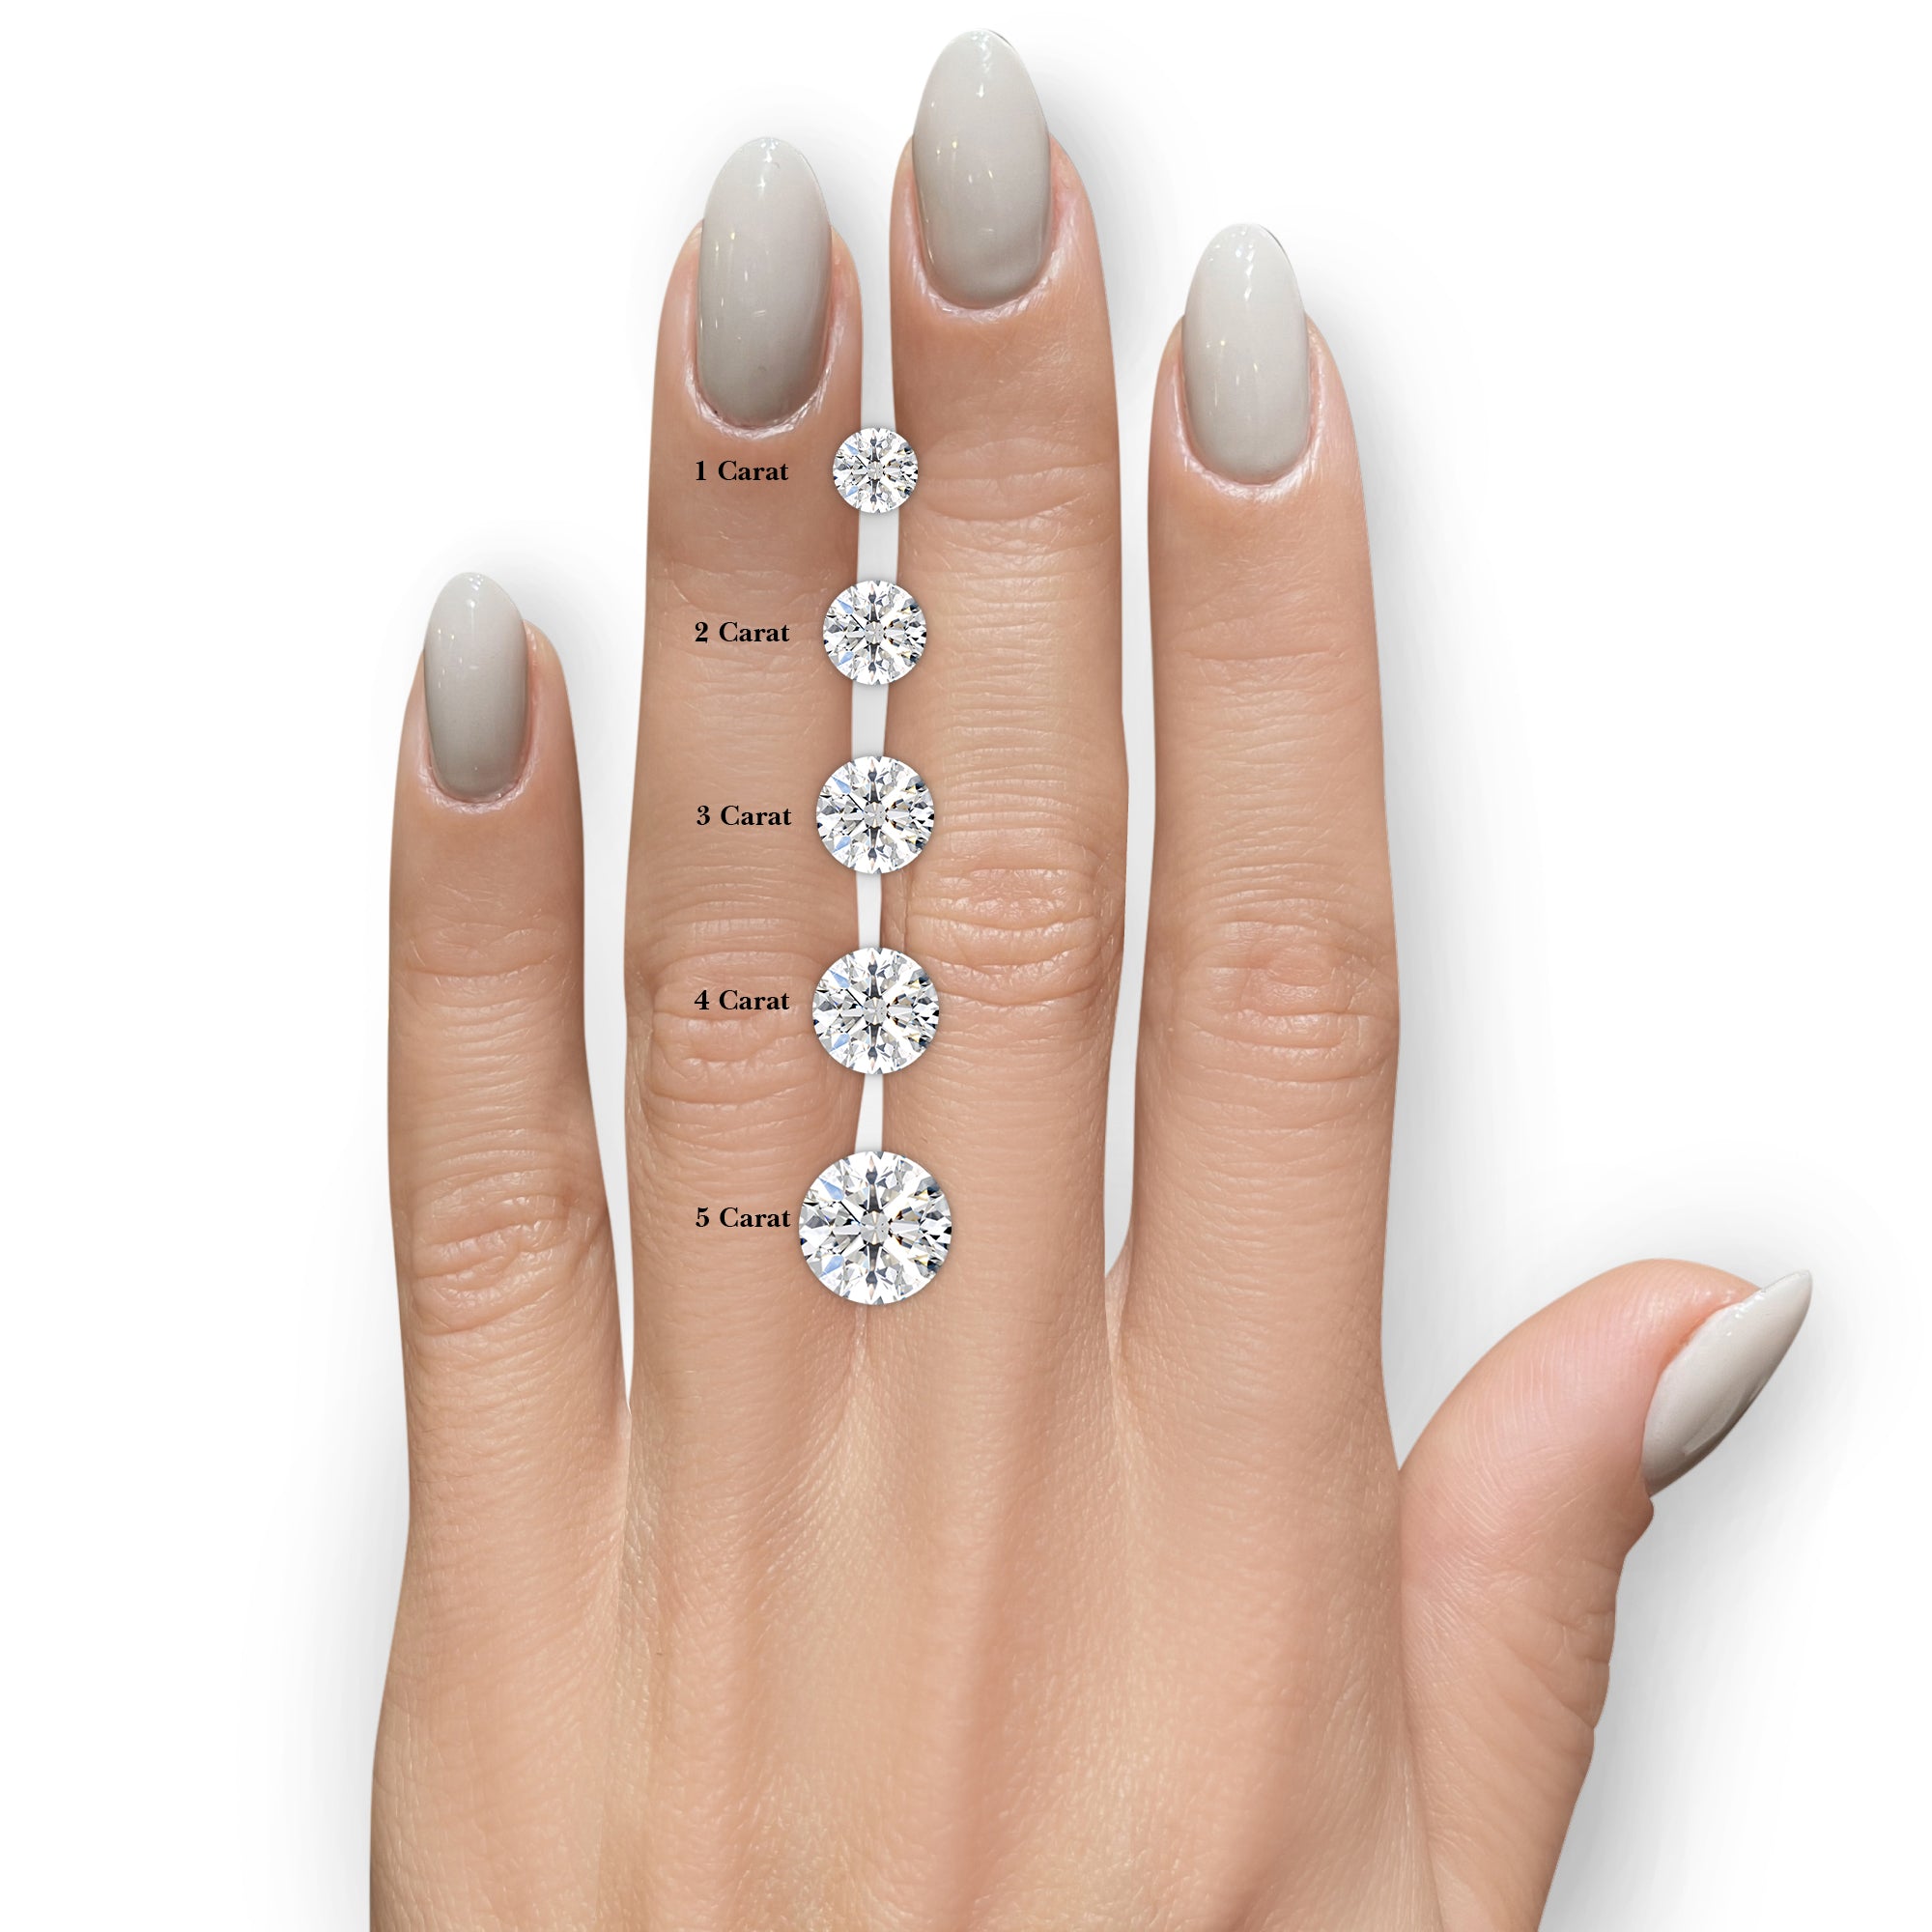 Kaia Diamond Engagement Ring -14K White Gold